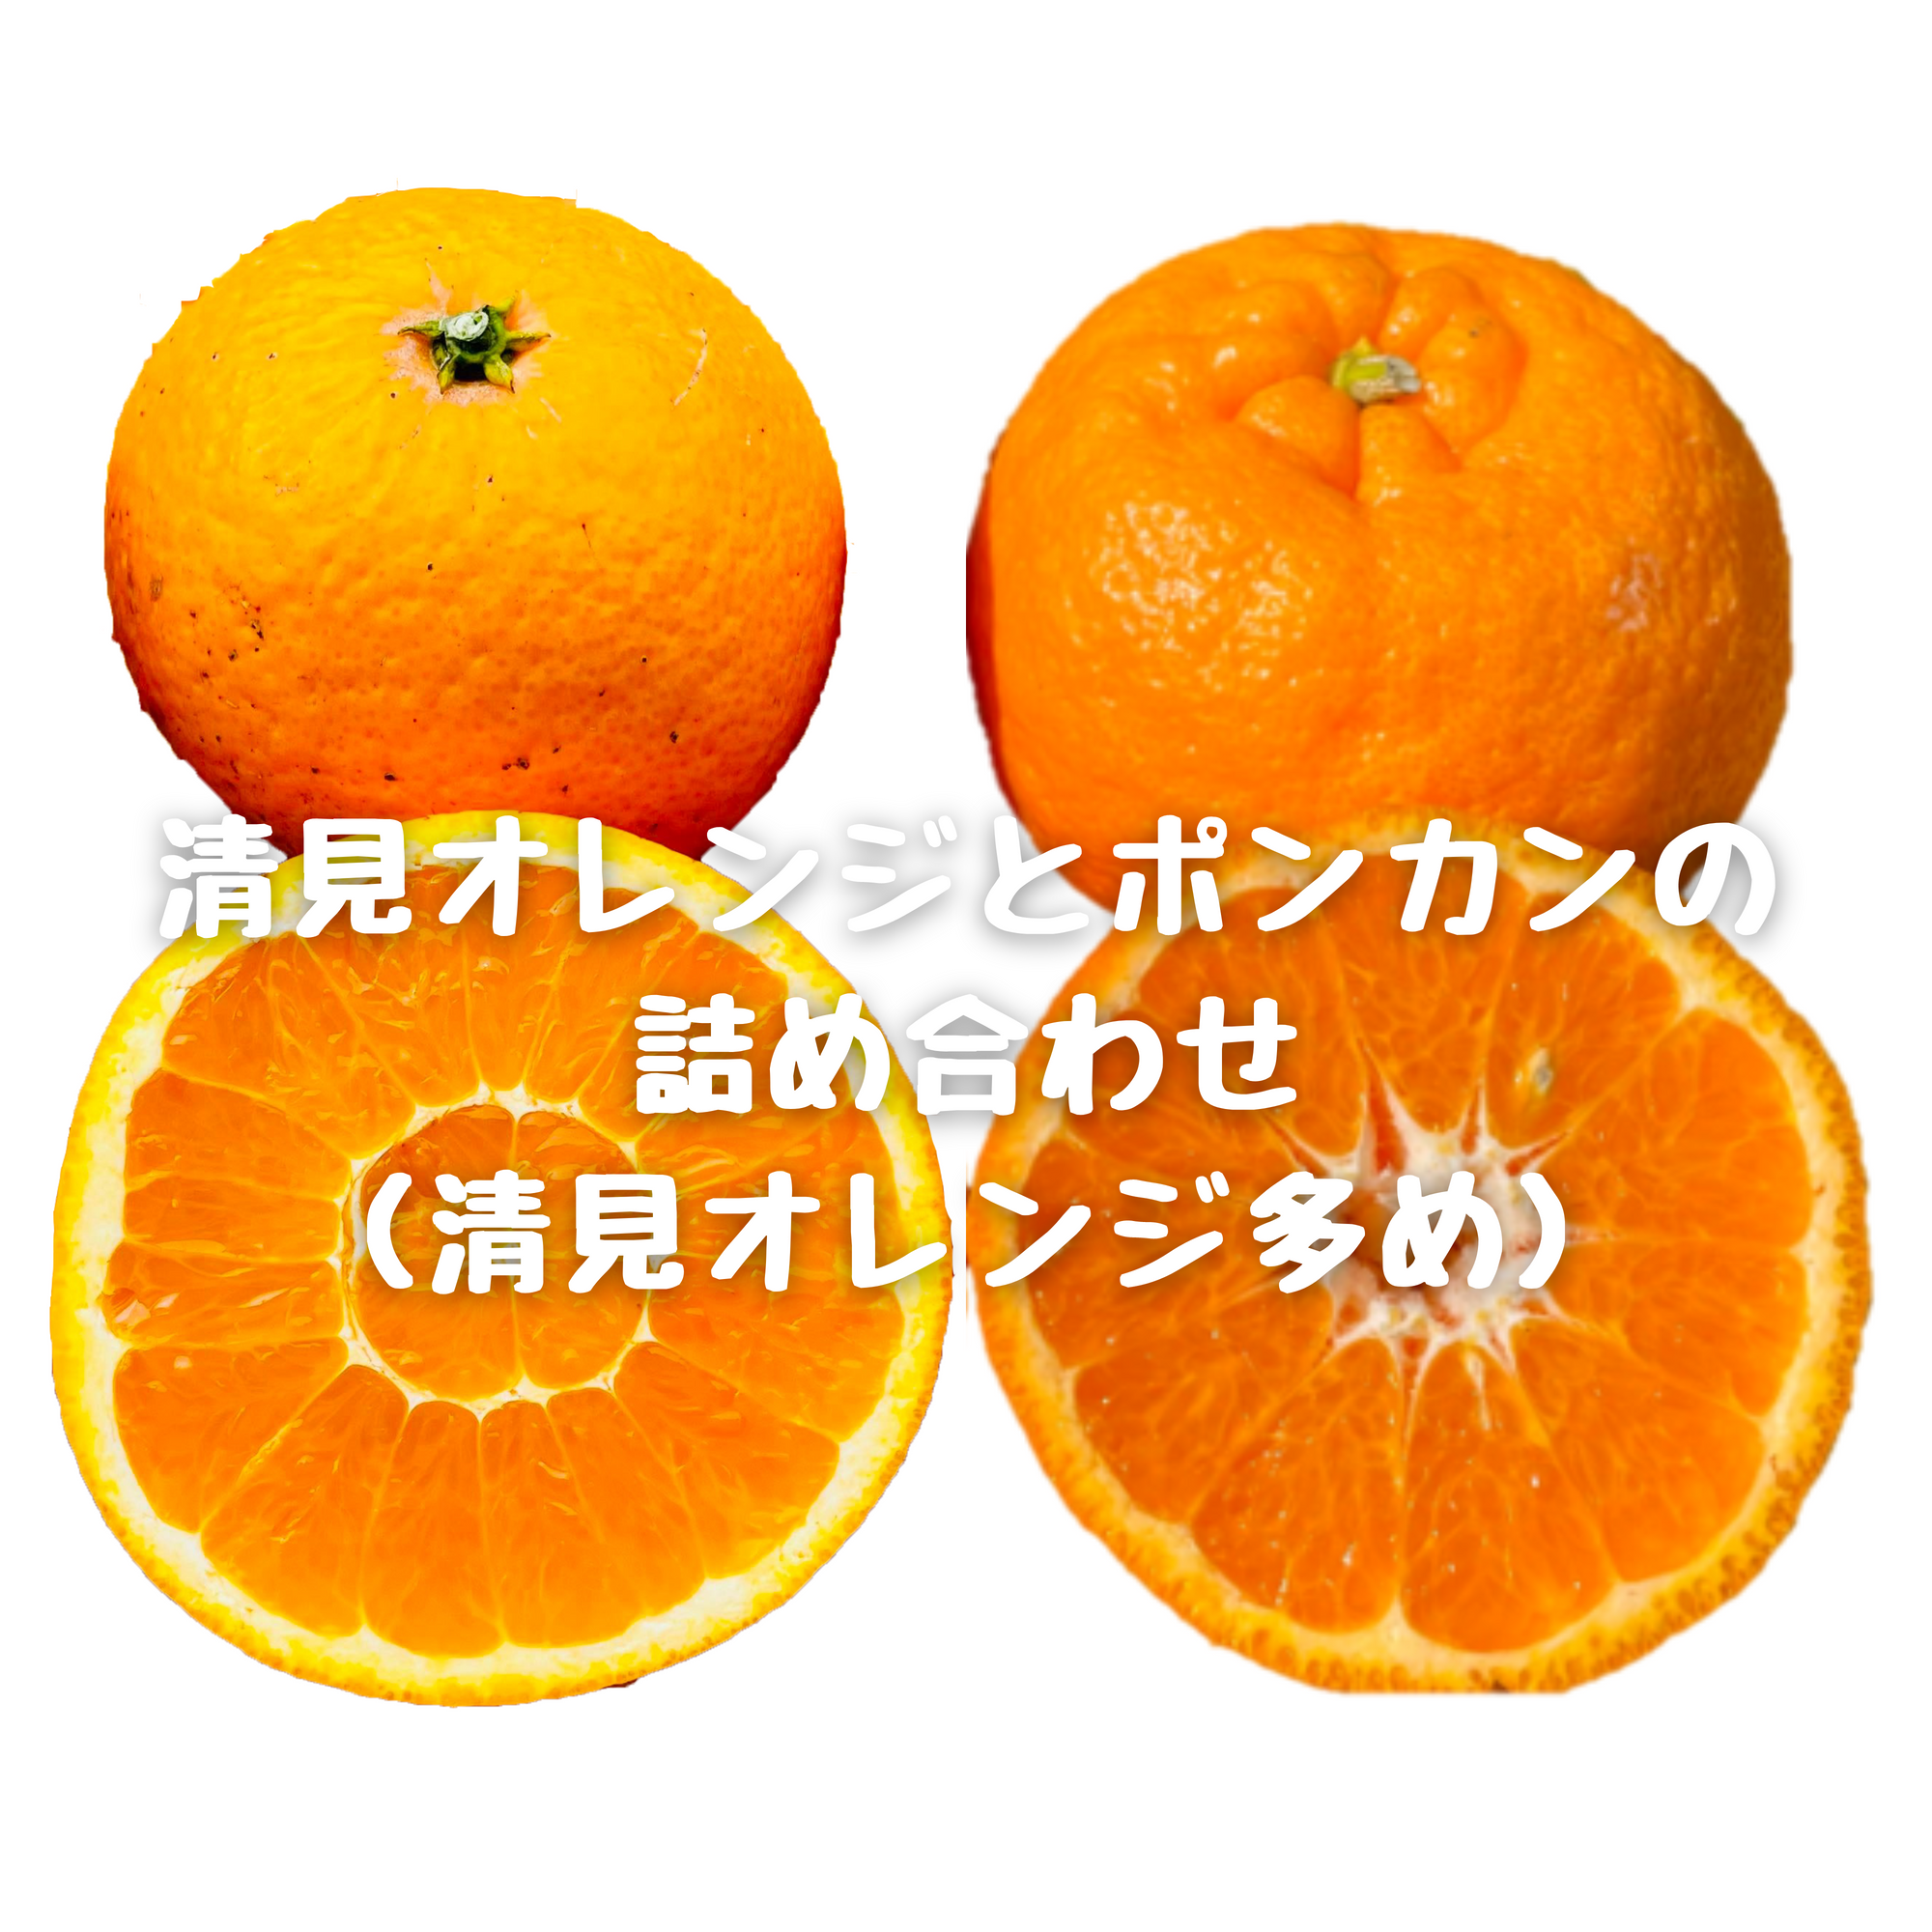 清見オレンジとポンカン(甘ポン)の詰め合わせ(清見オレンジ多め)